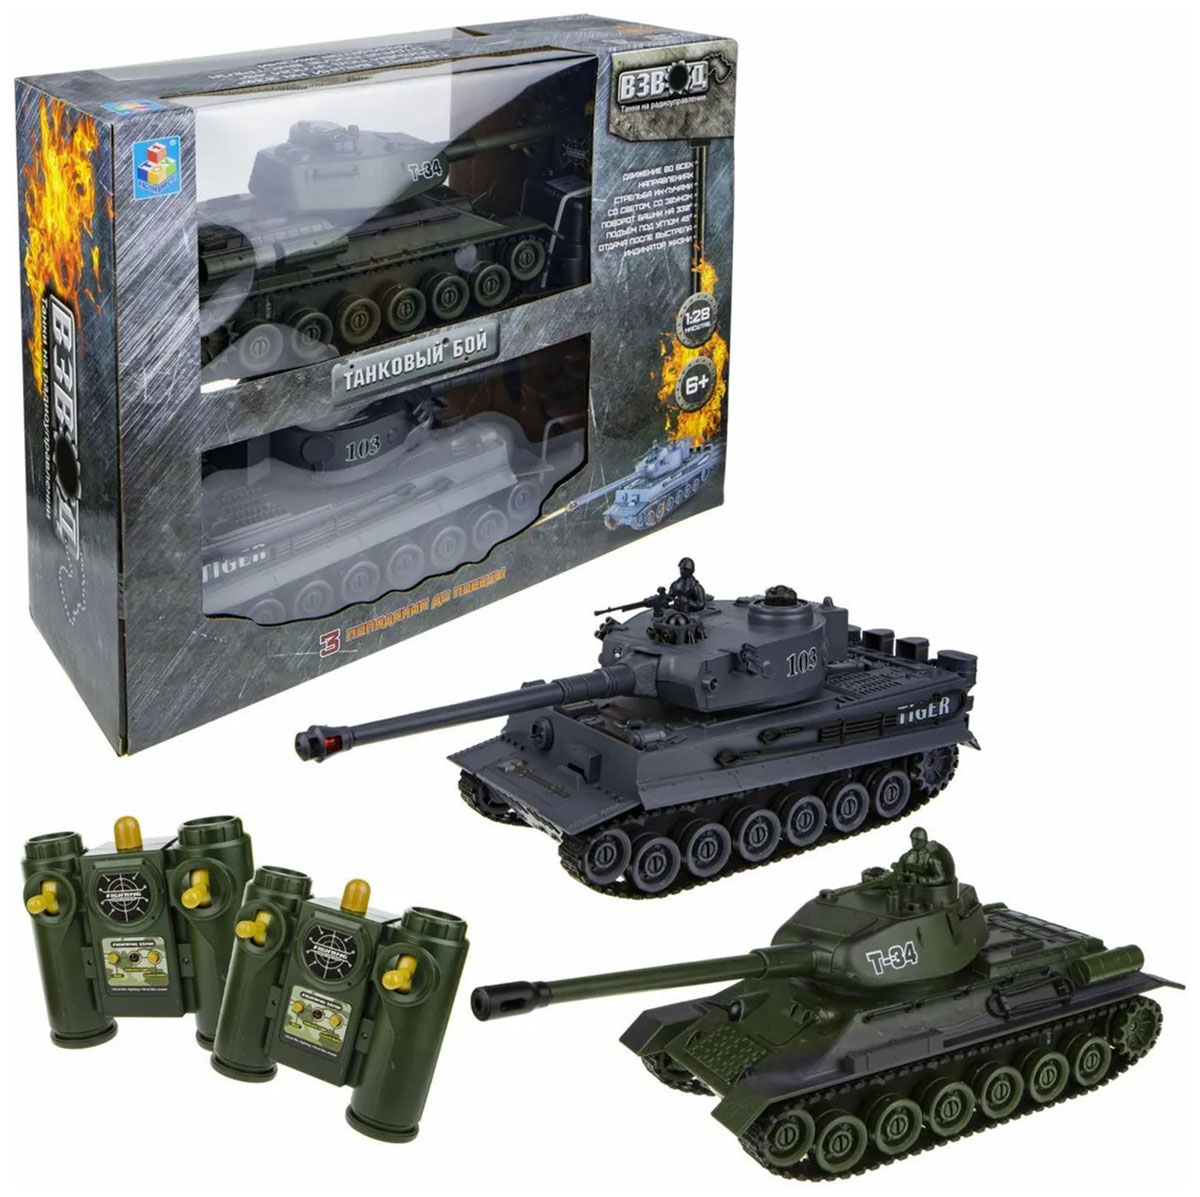 Танк 1 Toy Взвод танковый бой р/у (2 танка), 2,4 ГГц, 1:28 (35 см) танковый бой военная стратегия на радиоуправлении 2 танка свет и звук